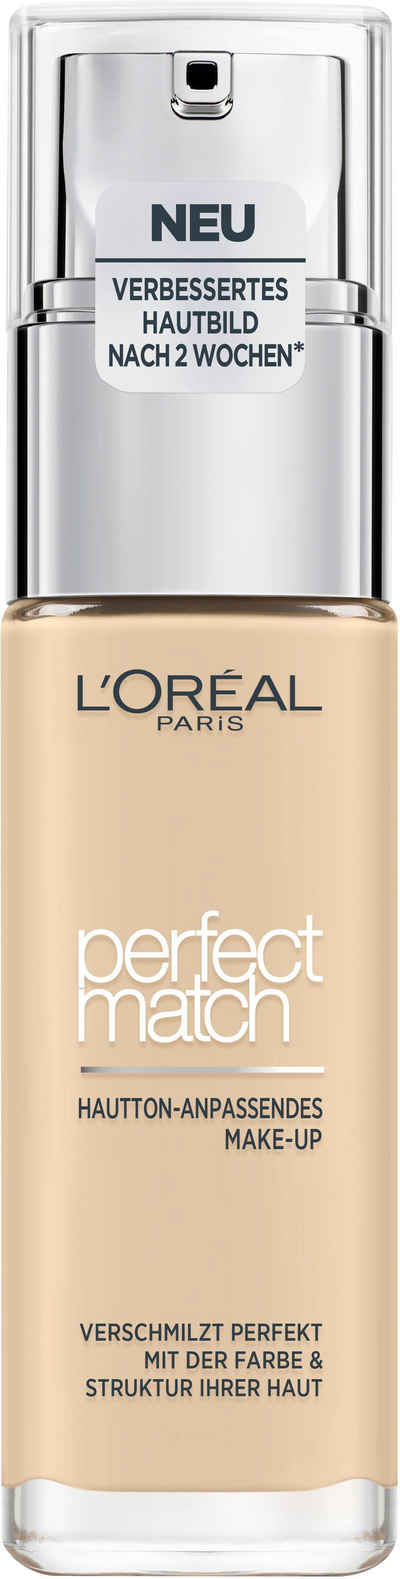 L'ORÉAL PARIS Foundation Perfect Match Make-Up